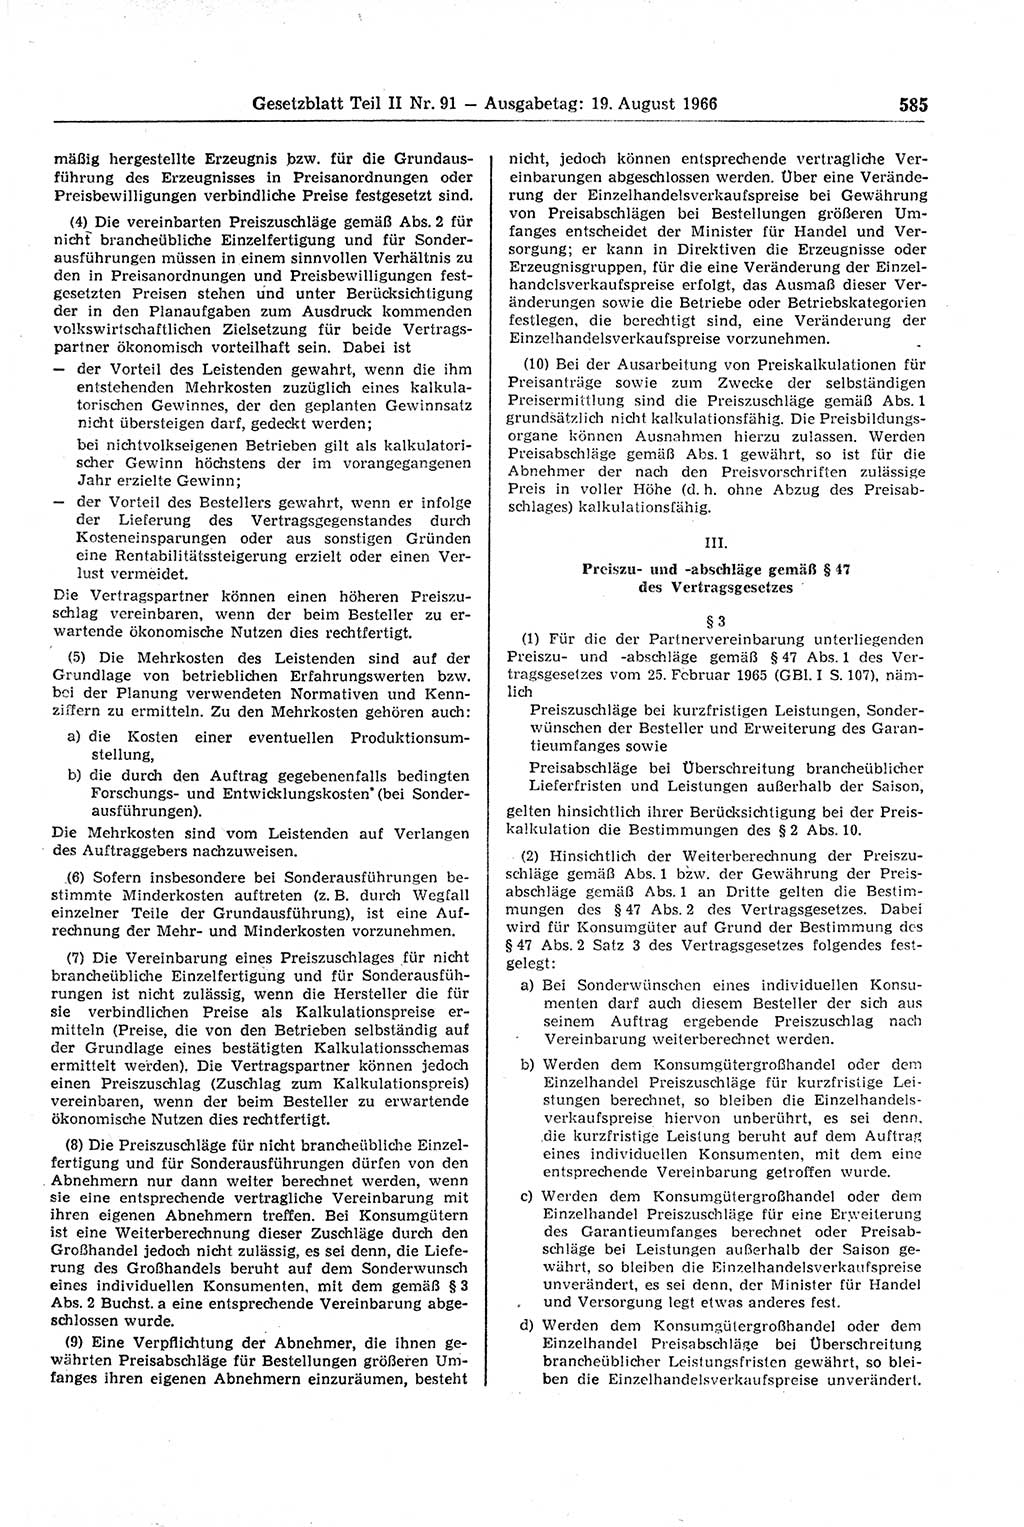 Gesetzblatt (GBl.) der Deutschen Demokratischen Republik (DDR) Teil ⅠⅠ 1966, Seite 585 (GBl. DDR ⅠⅠ 1966, S. 585)